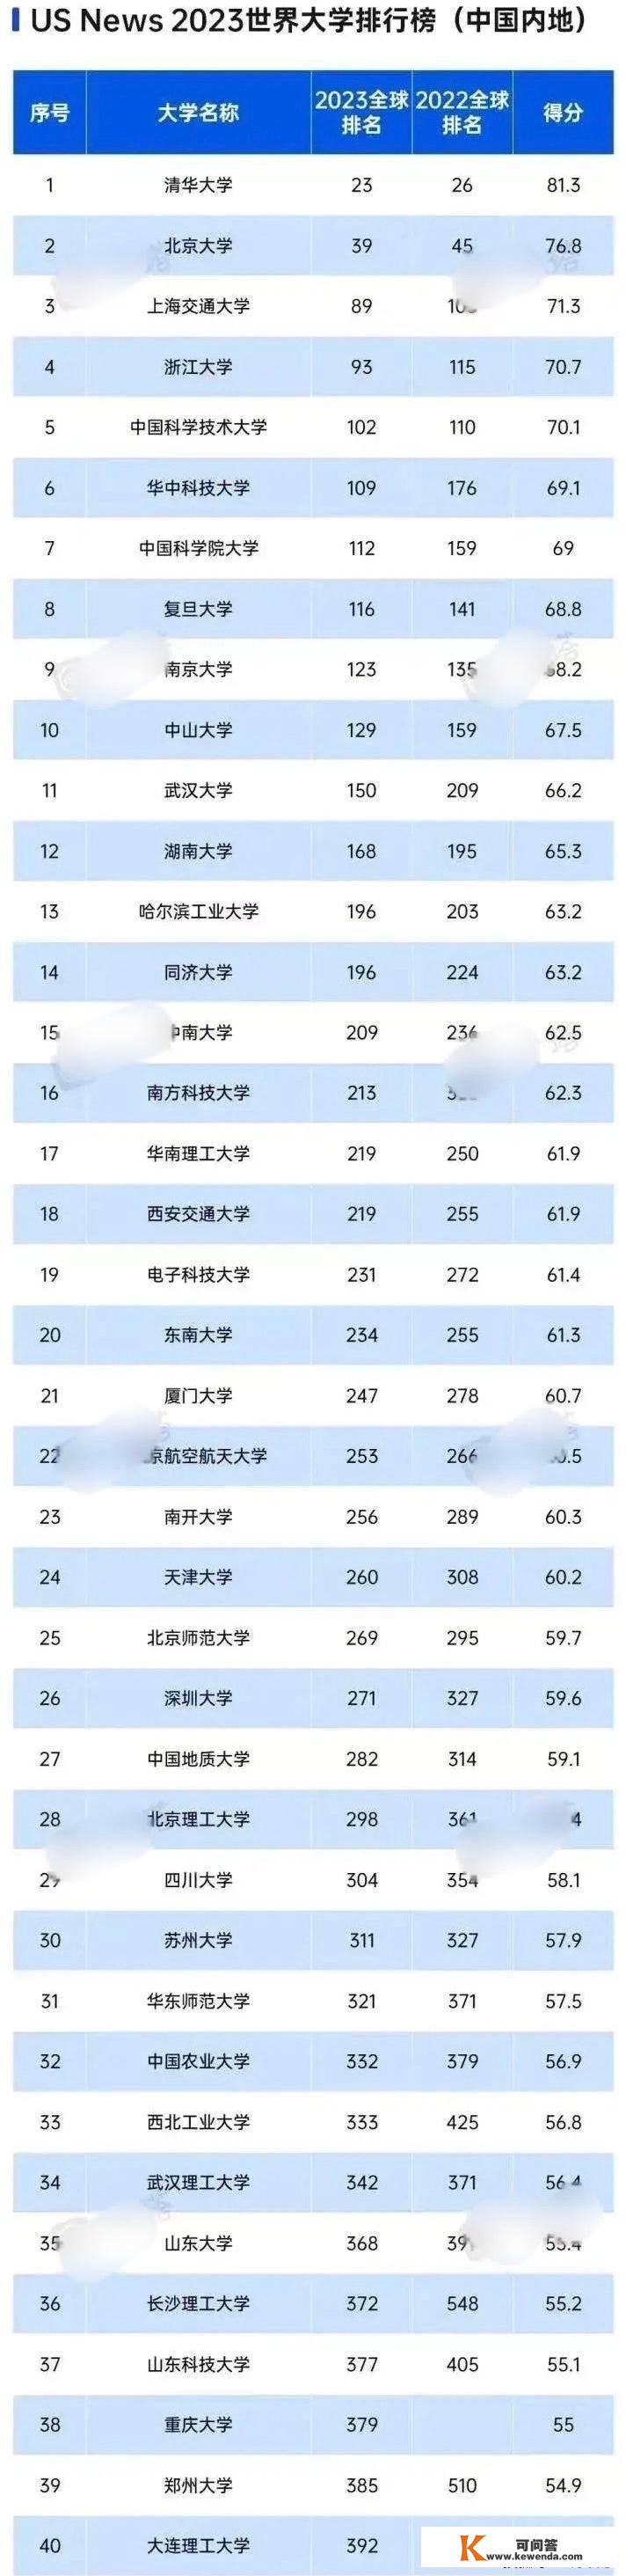 2023世界大学排名榜，中国14所高校入围200强，华东占5所